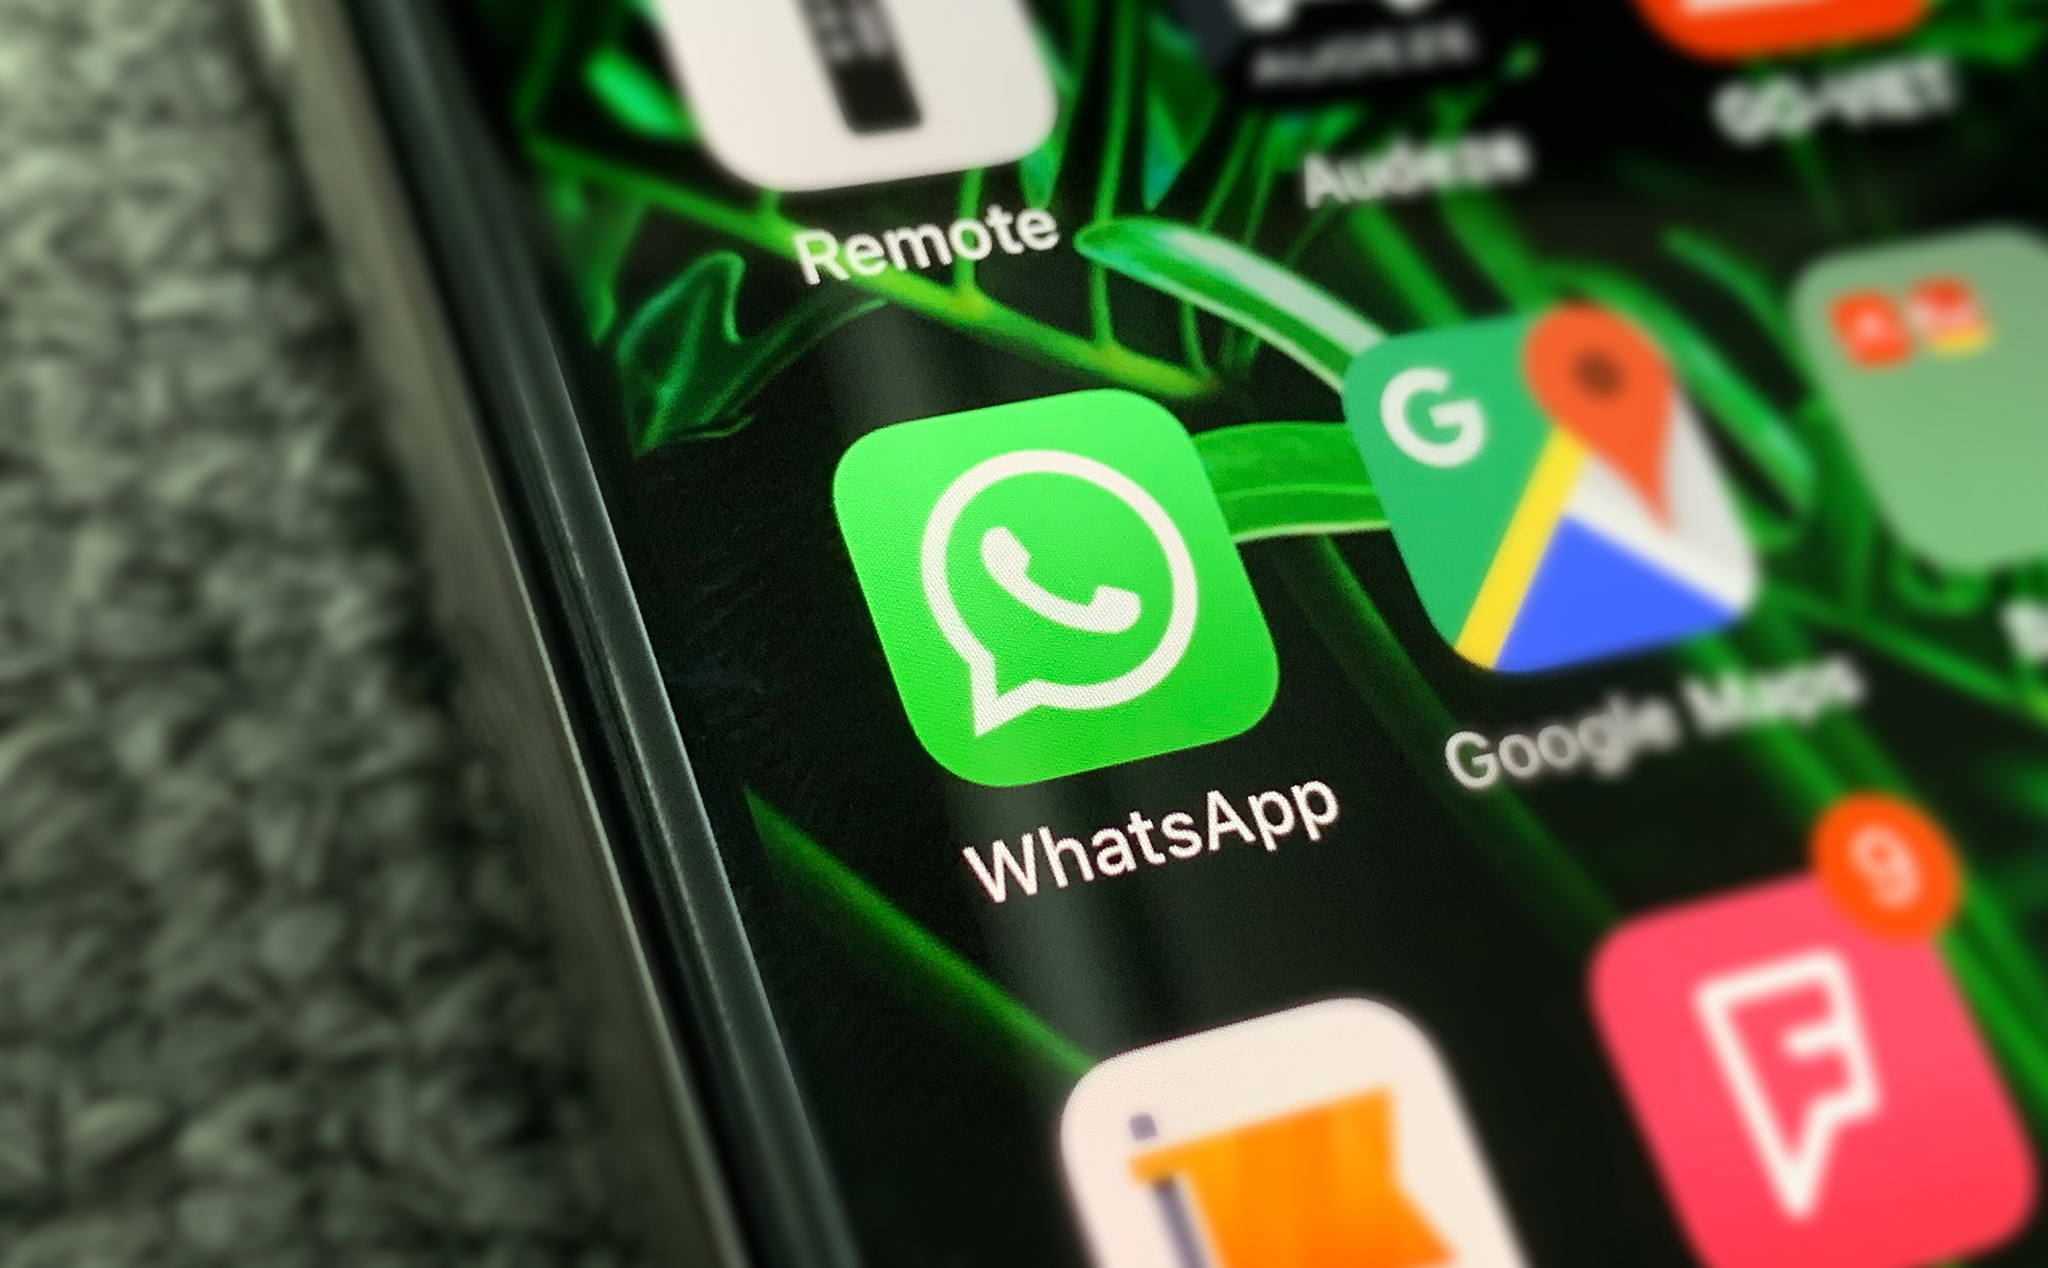 WhatsApp ngưng hỗ trợ nền tảng Windows Phone và Android / iOS phiên bản cũ